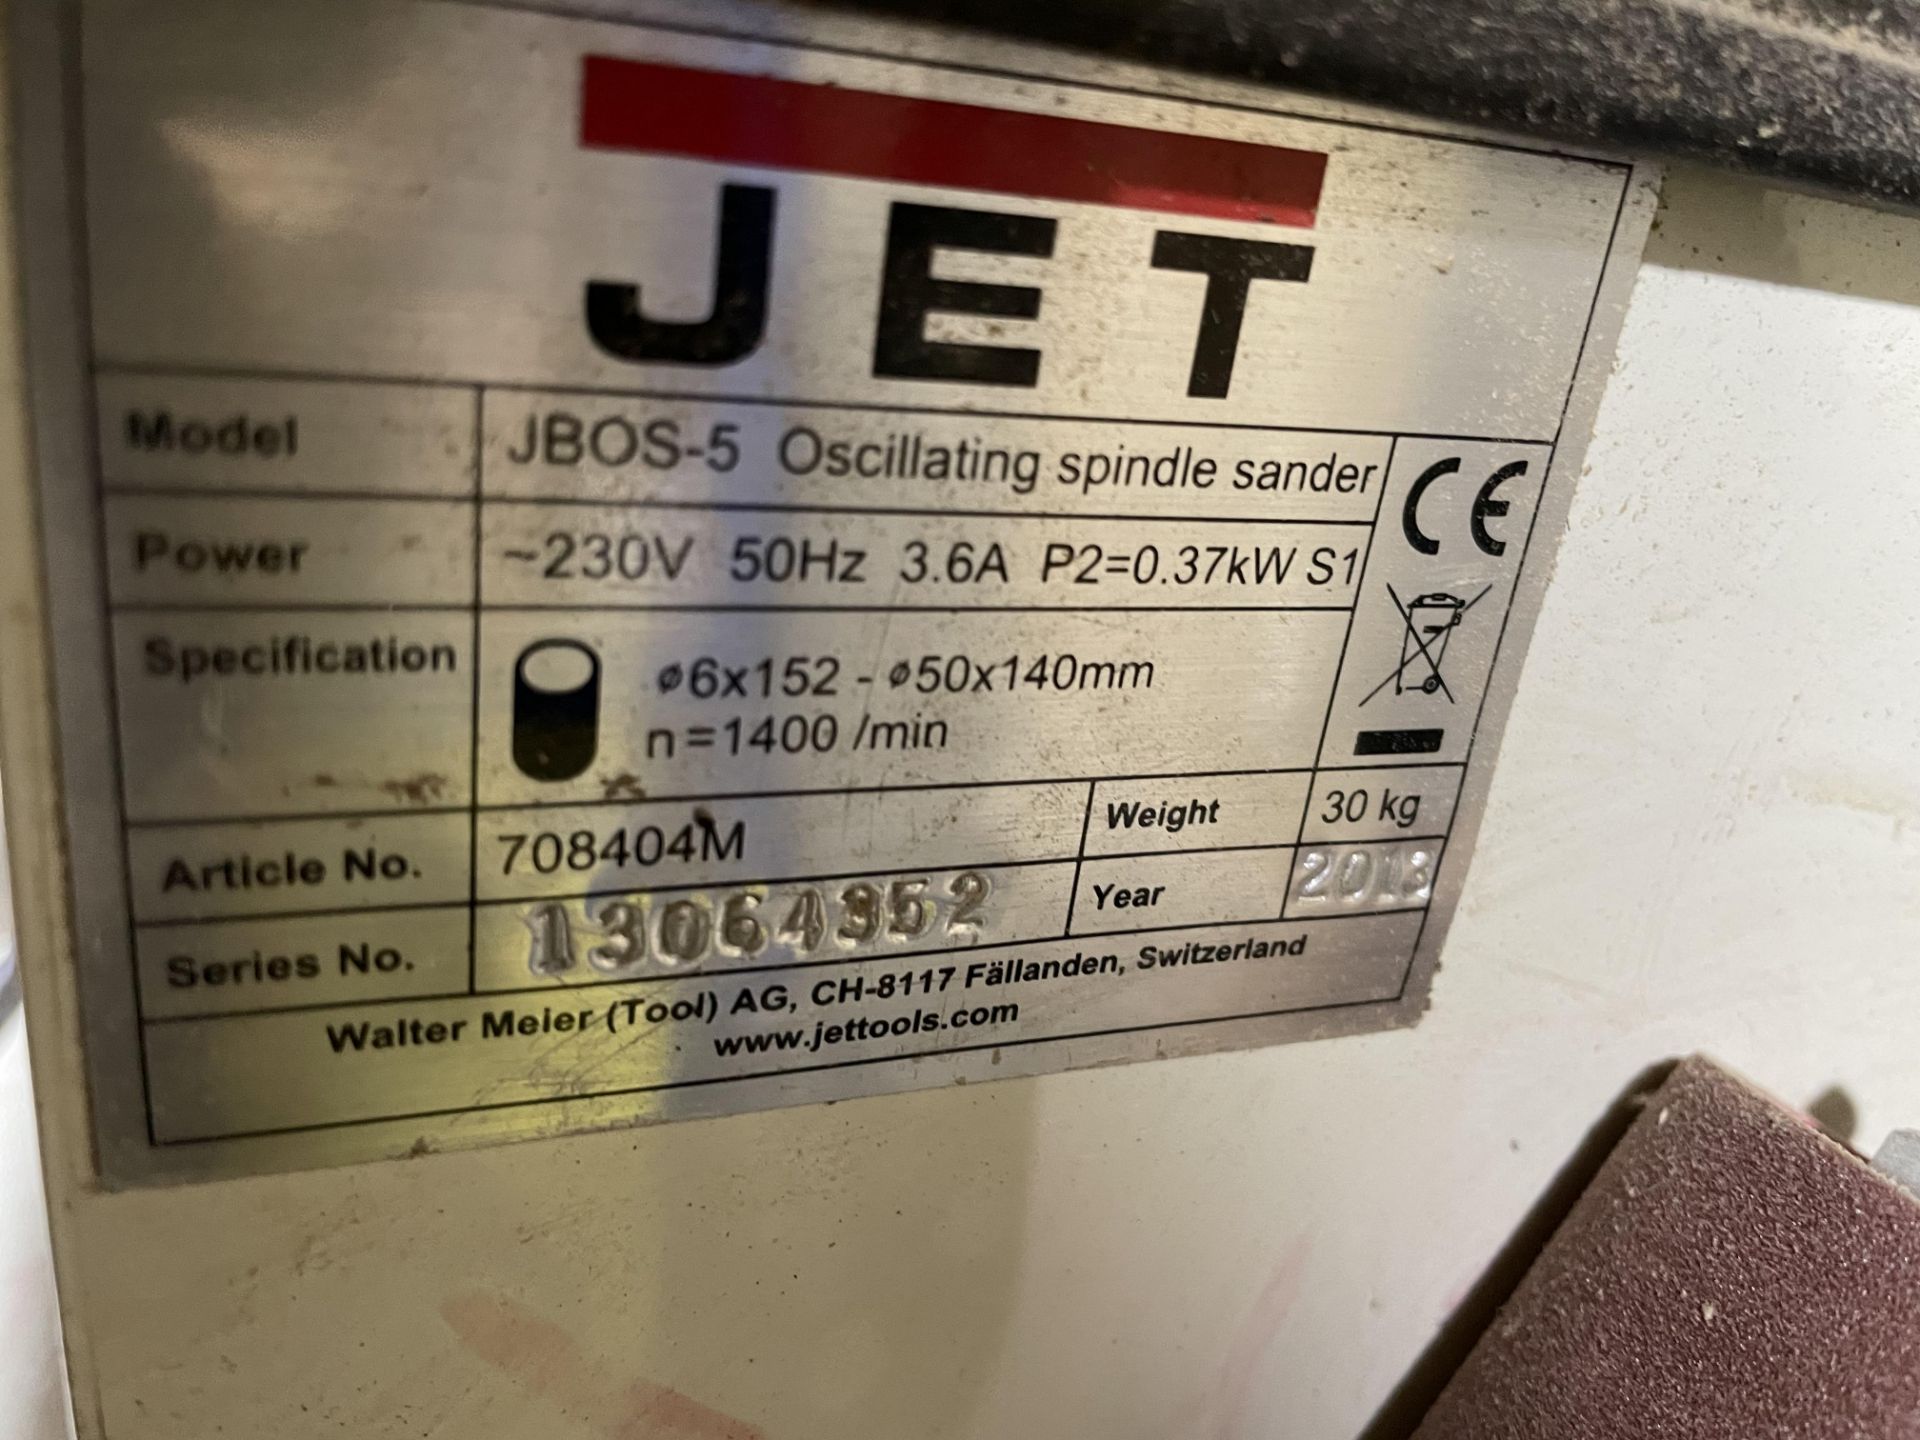 Jet JB0S-5 Oscillating Spindle Sander - 230V - Serial No. 13064352 - Year 2018. - Image 4 of 4